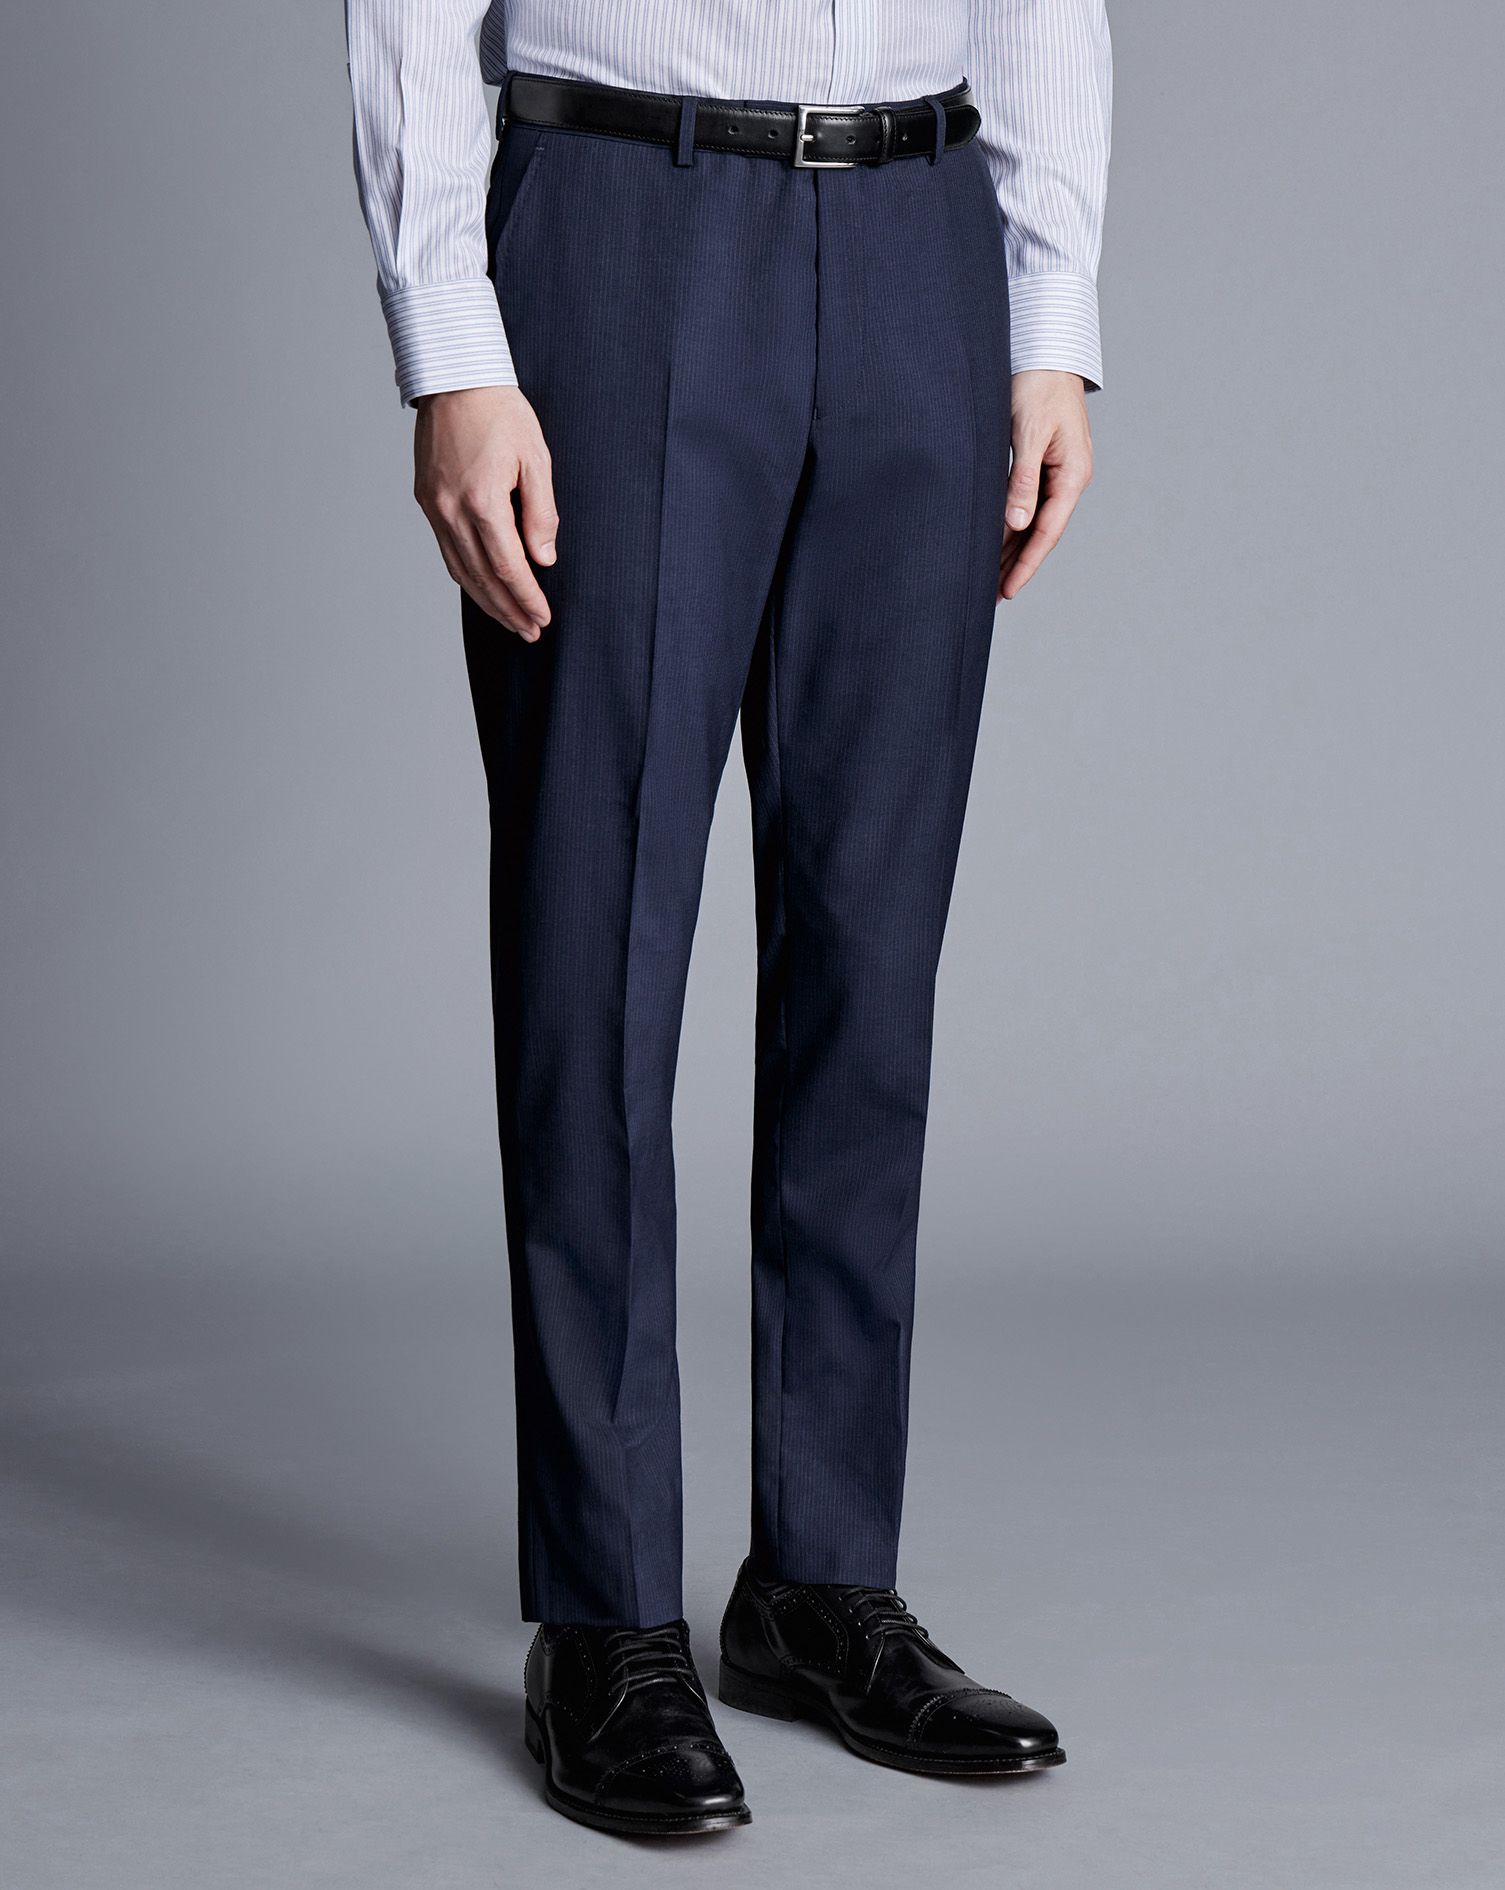 Men's Charles Tyrwhitt Stripe Suit Trousers - Navy Blue Size 34/34 Wool | Charles Tyrwhitt